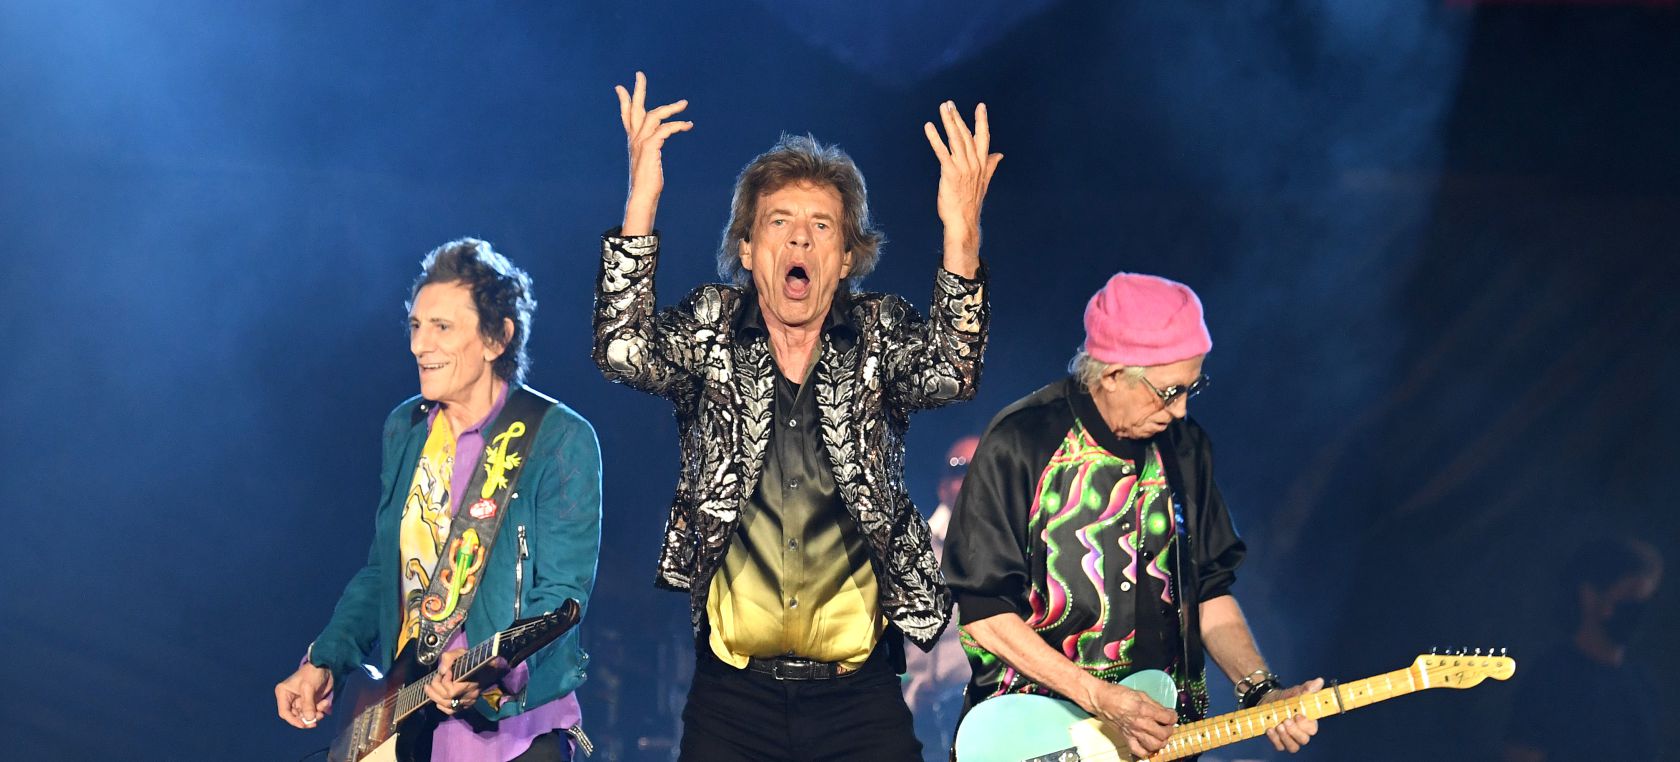 Los Rolling Stones dejarán de tocar un emblemático tema para no “meterse en líos”